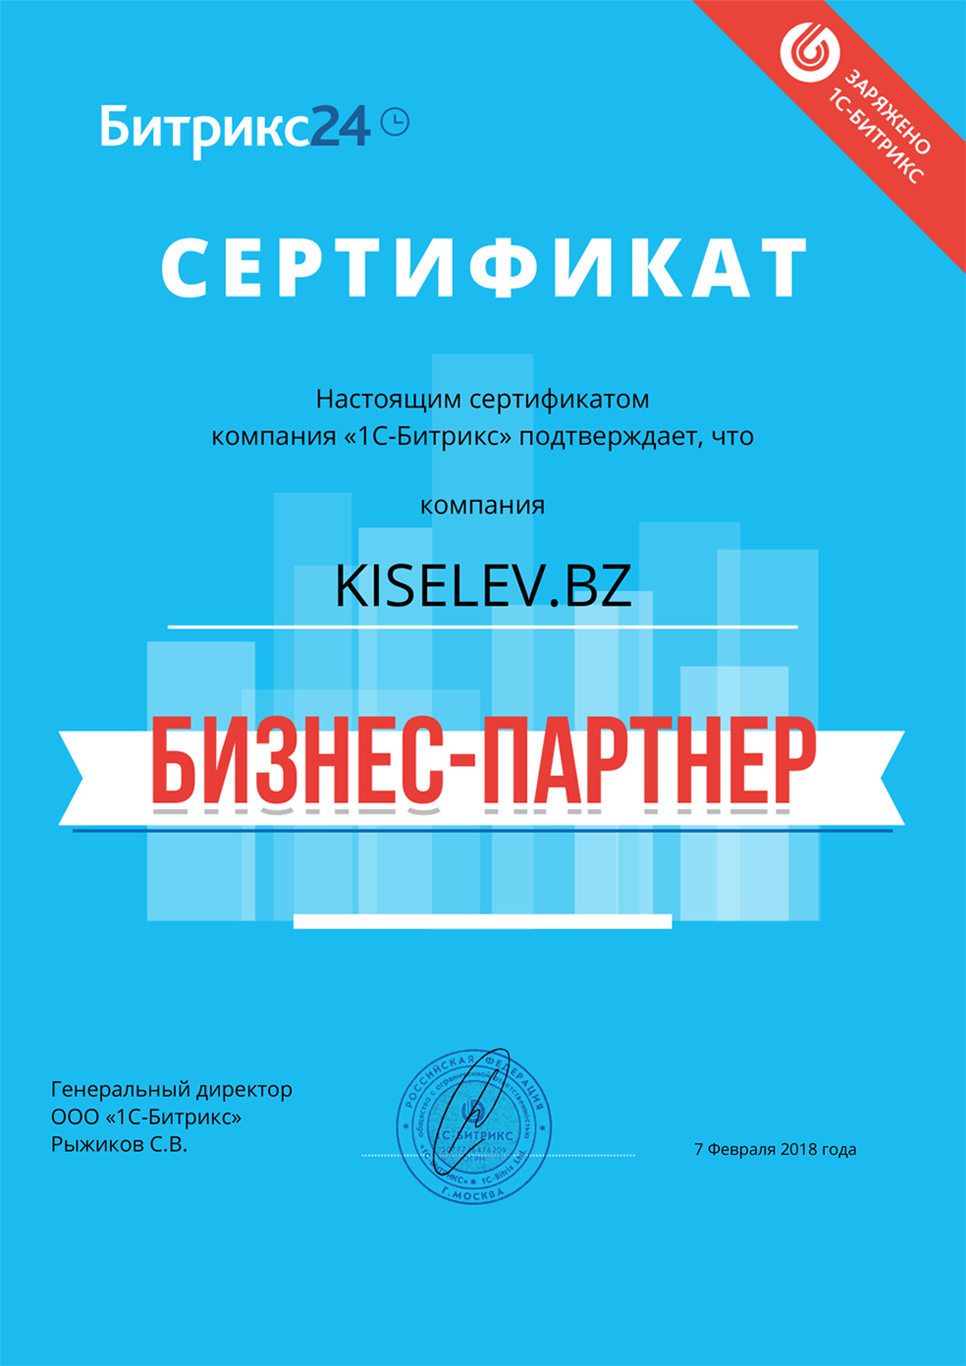 Сертификат партнёра по АМОСРМ в Находке